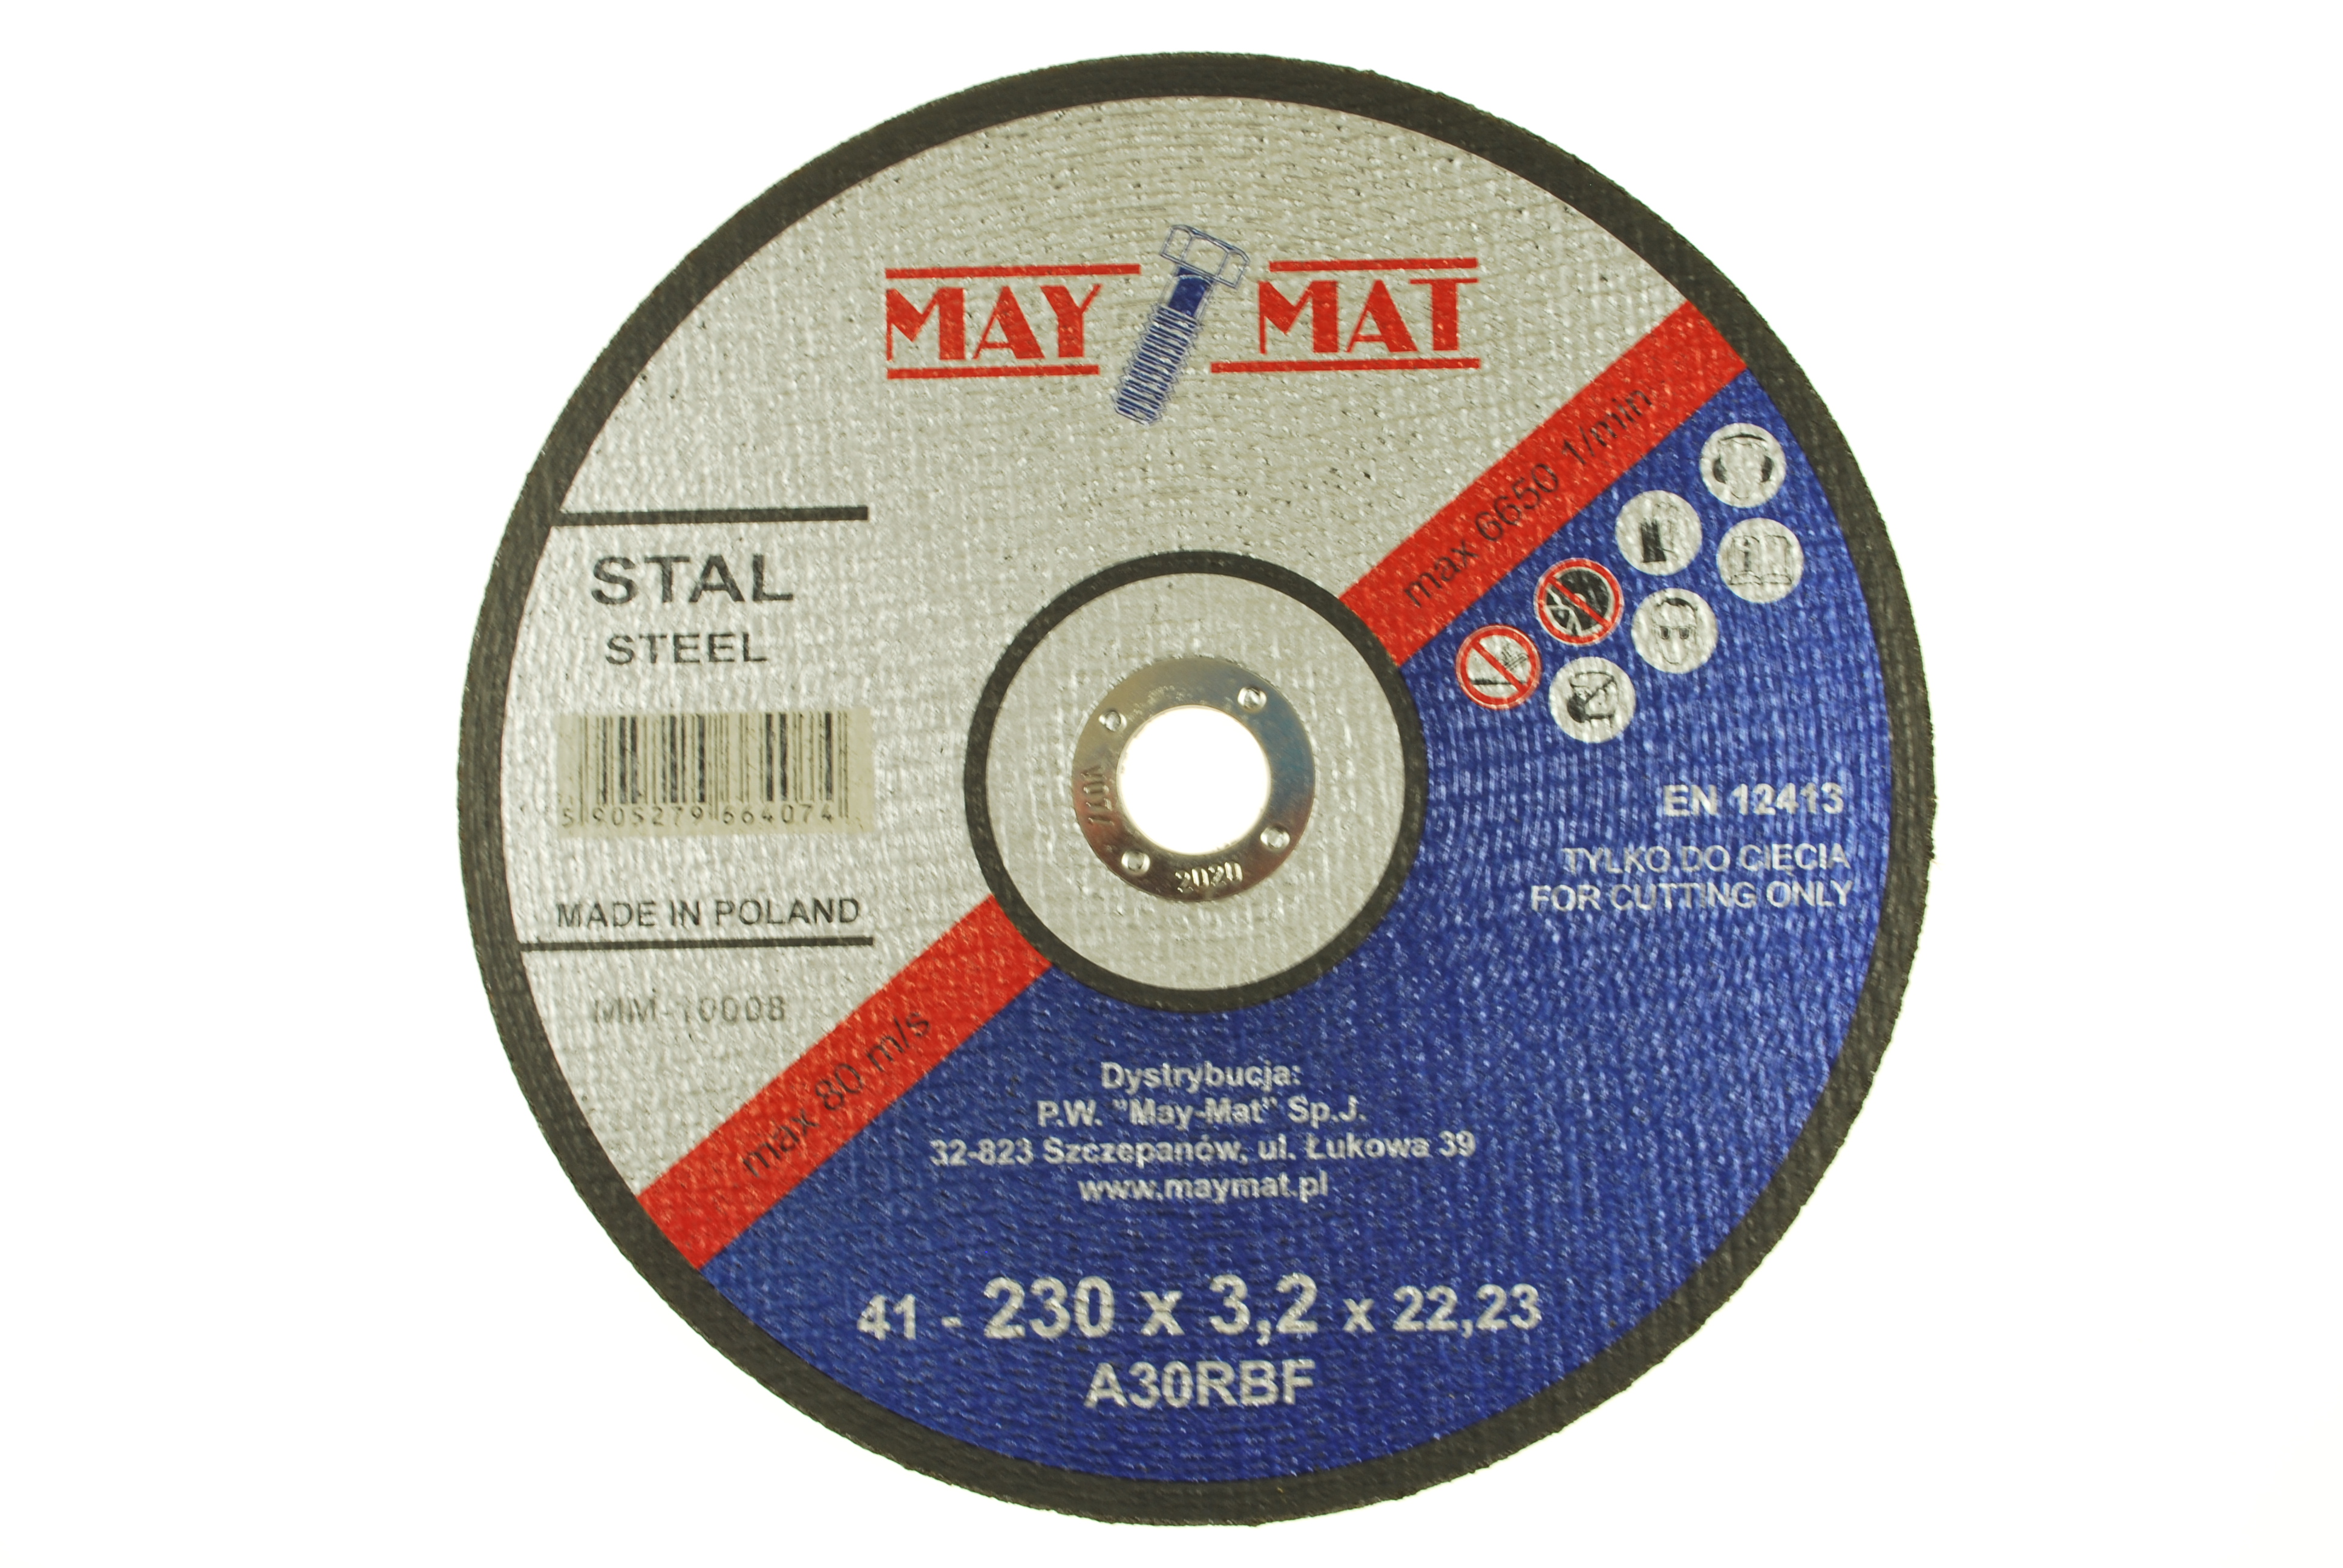 TARCZA DO METALU 230X3,2 /MAY-MAT/ MM-10008